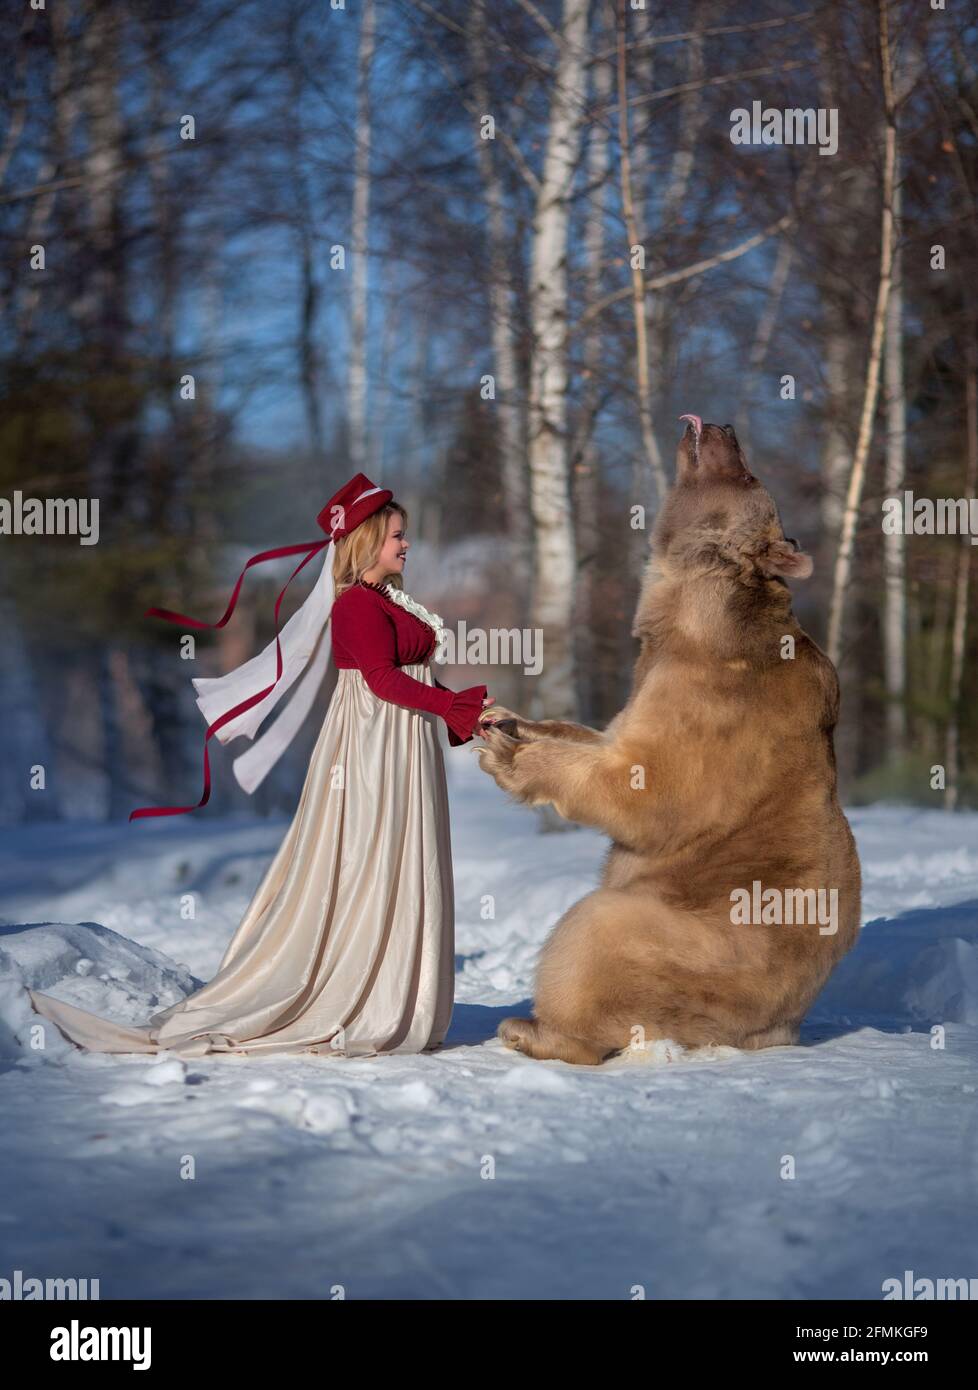 Stepan hält die Hände mit diesem Modell in einem verschneiten Wald. MOSKAU, RUSSLAND: TREFFEN SIE DEN echten Bären, der von seiner Mutter verlassen und von Menschen aufgezogen wurde, die jetzt eine haben Stockfoto